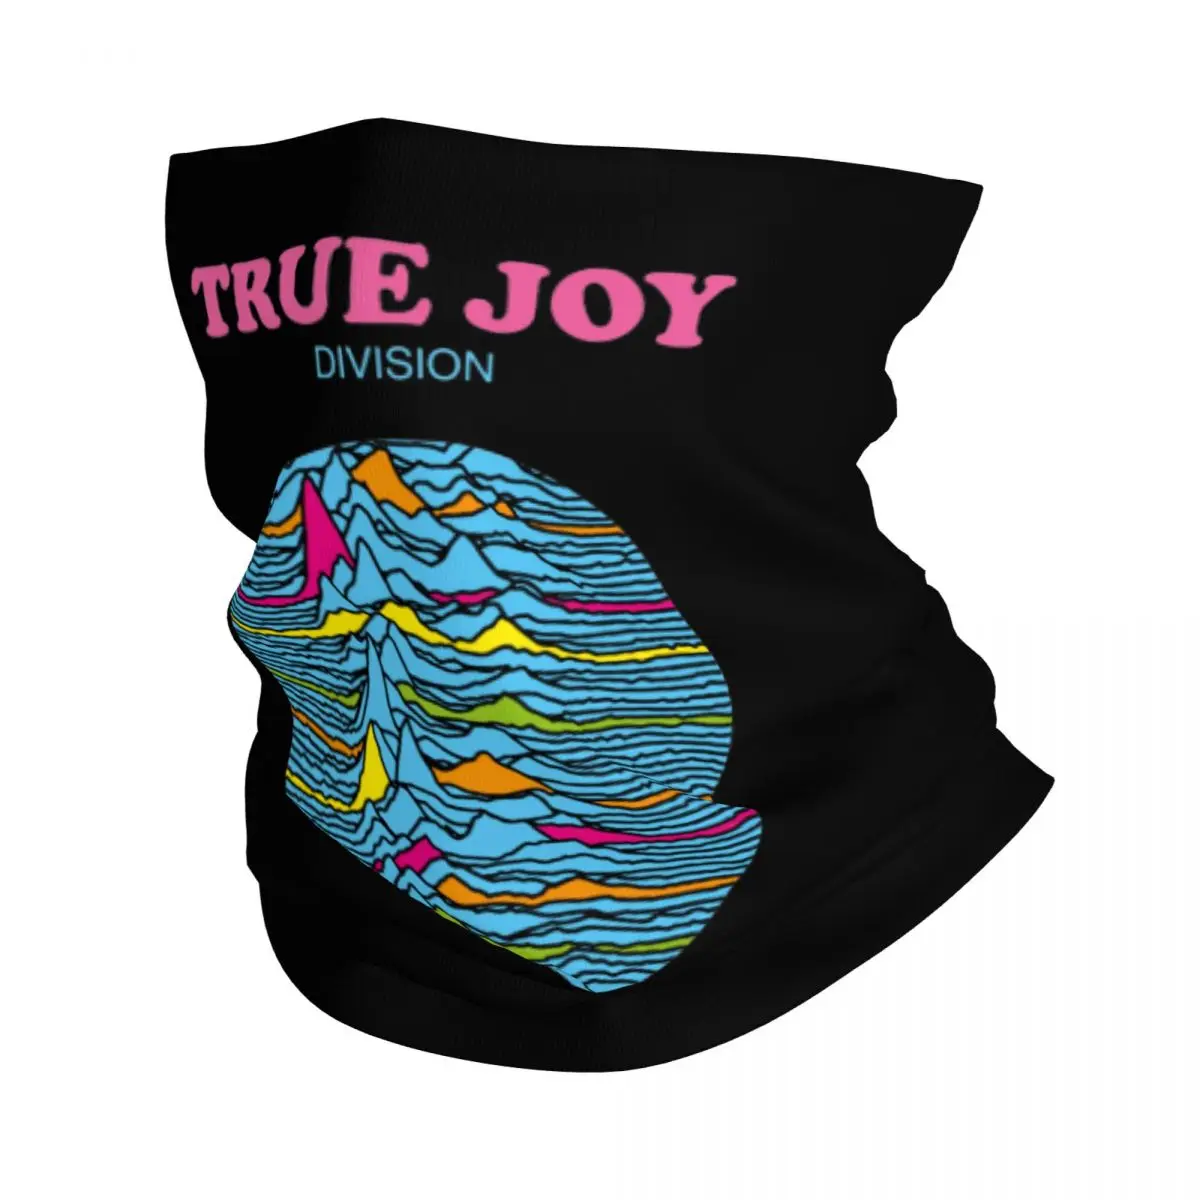 

Бандана True Joy Division, шарф, гетры, рок-группа, музыка, Балаклава, шарф, Теплый головной убор для верховой езды для мужчин и женщин, для взрослых